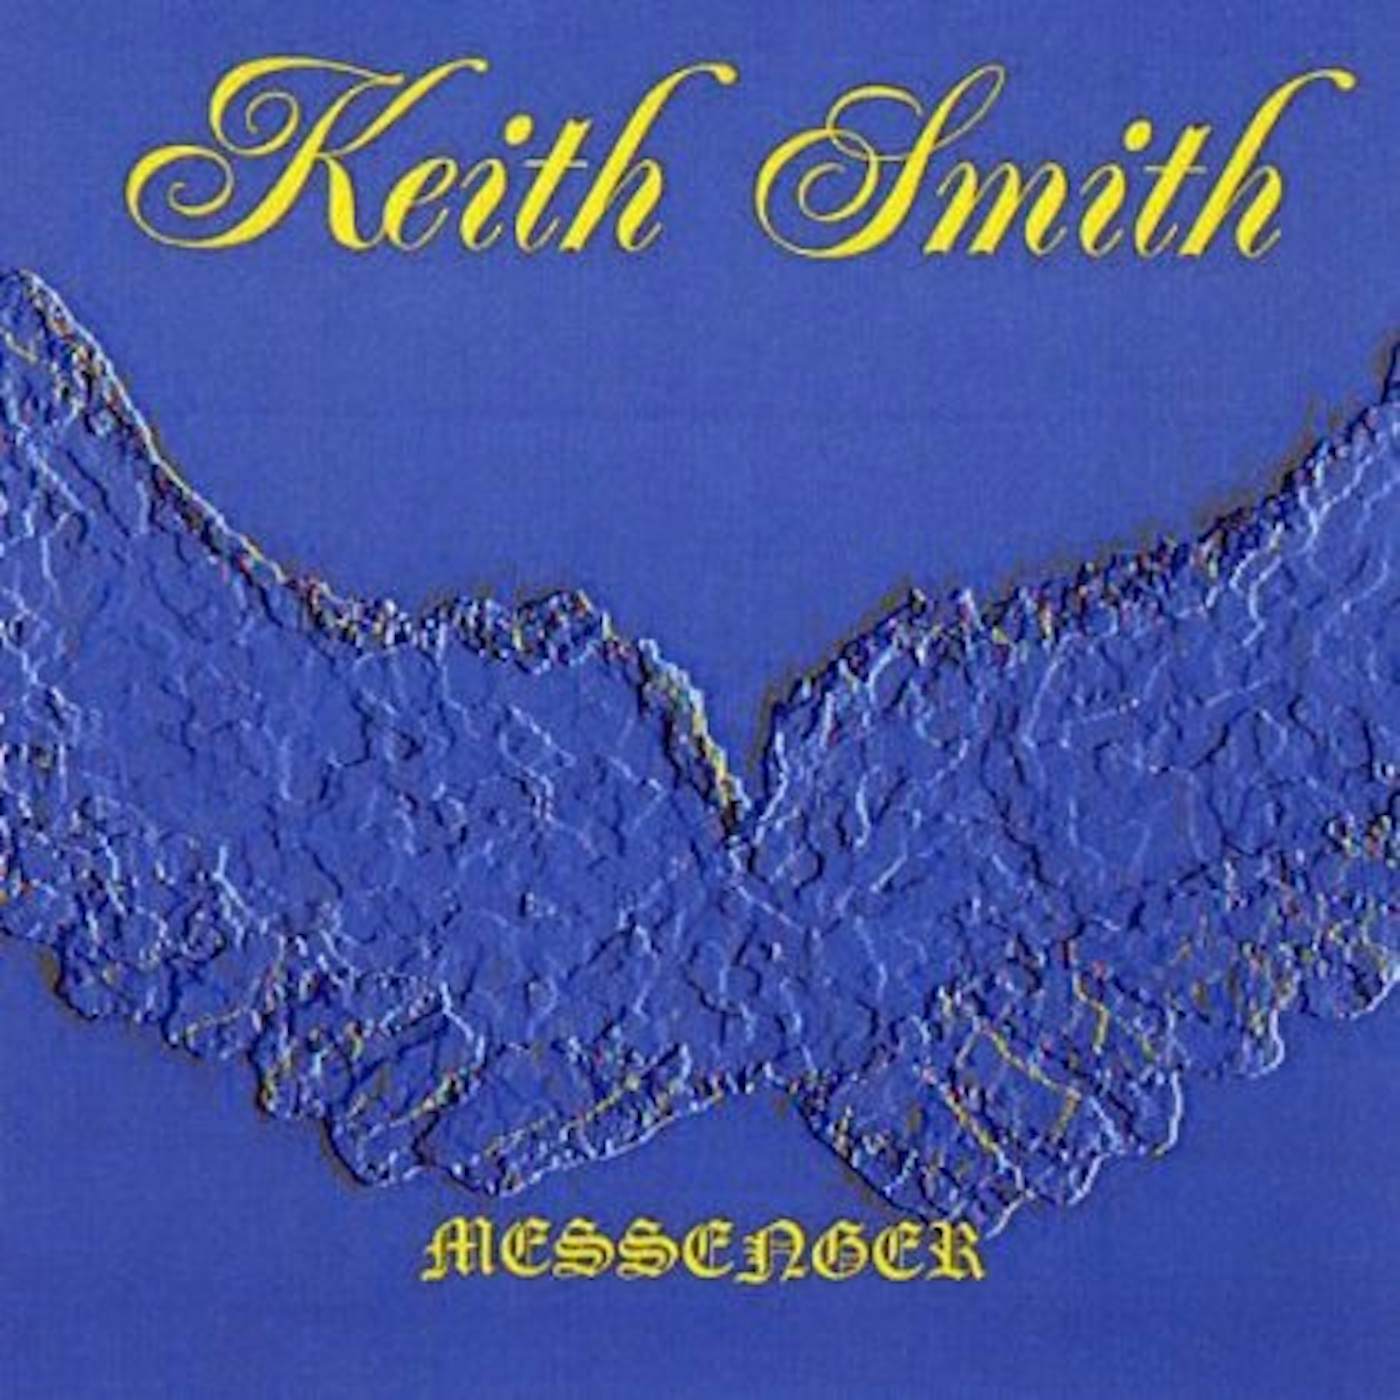 Keith Smith MESSENGER CD